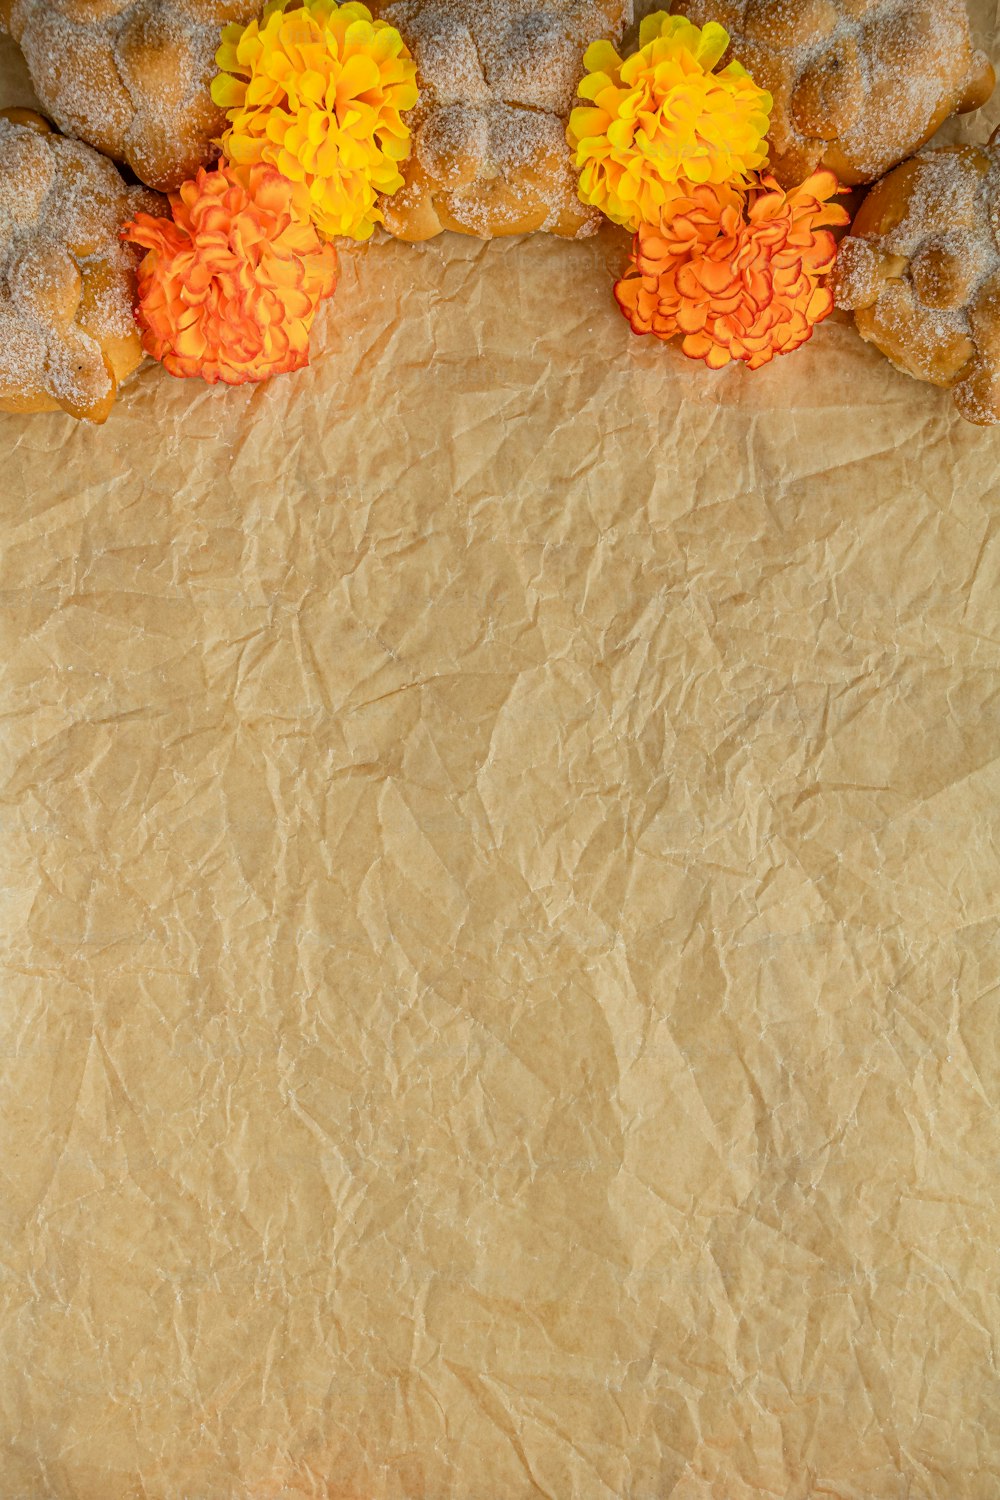 un tas de beignets posés sur un morceau de papier